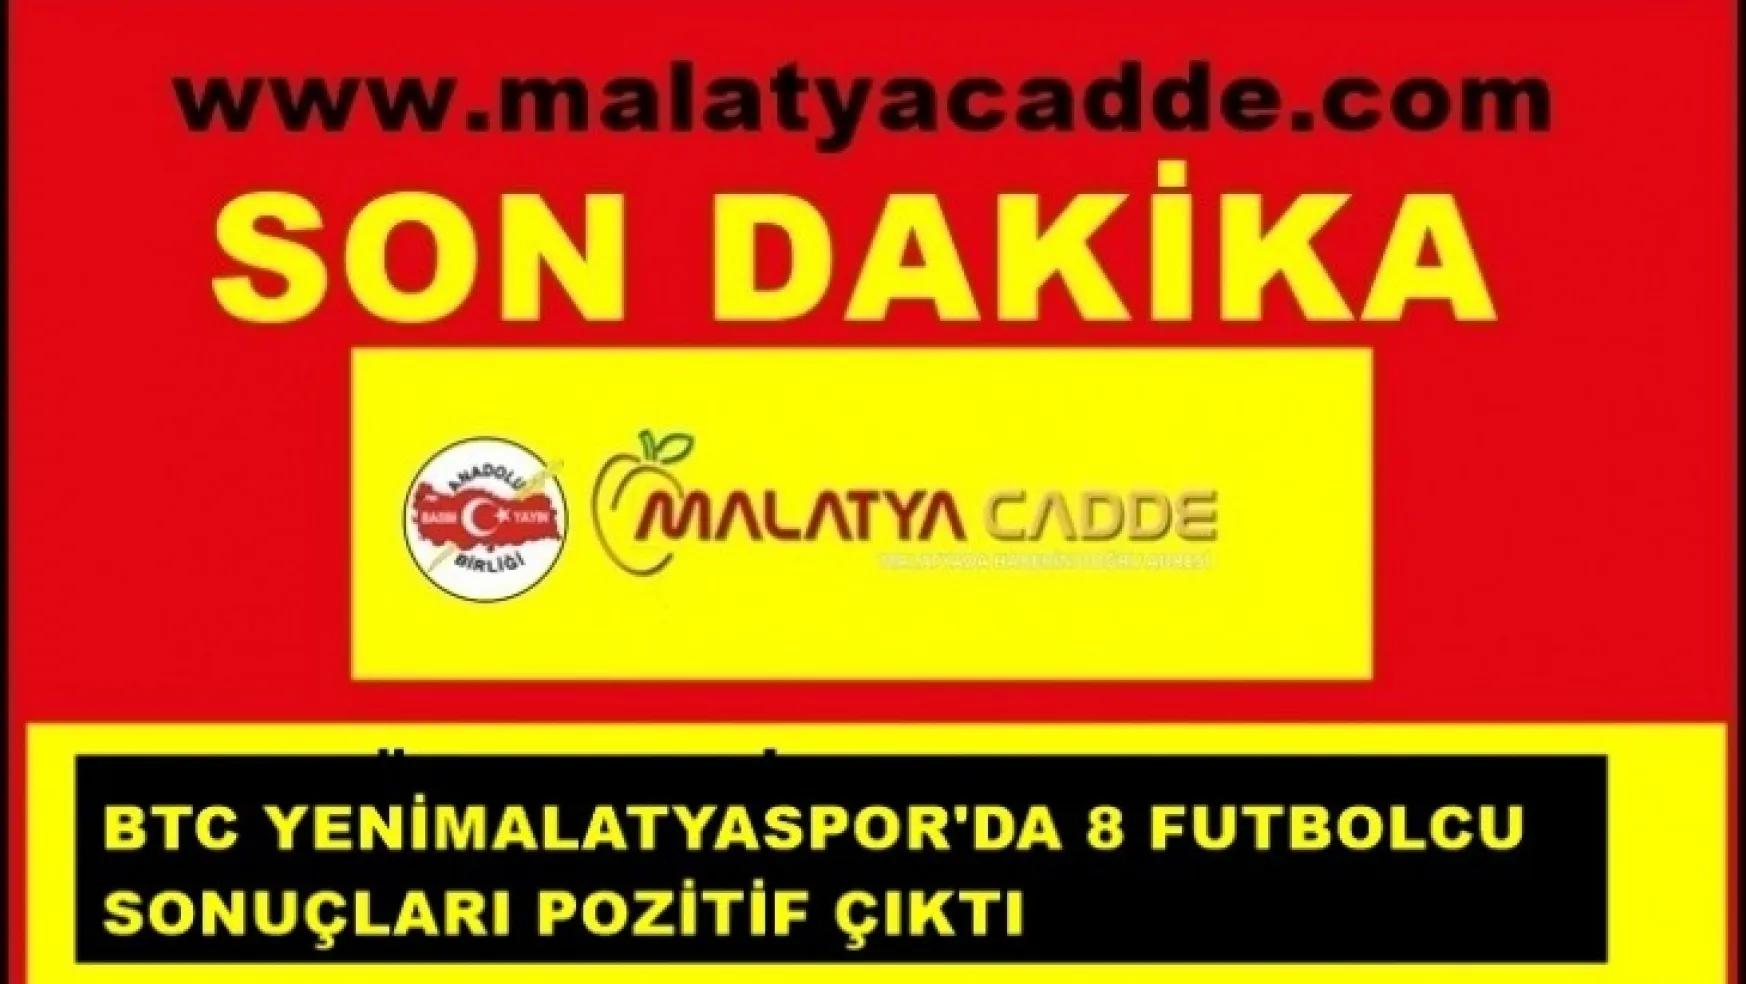 BTC Yenimalatyaspor'da 8 futbolcu'nun testleri pozitif çıktı